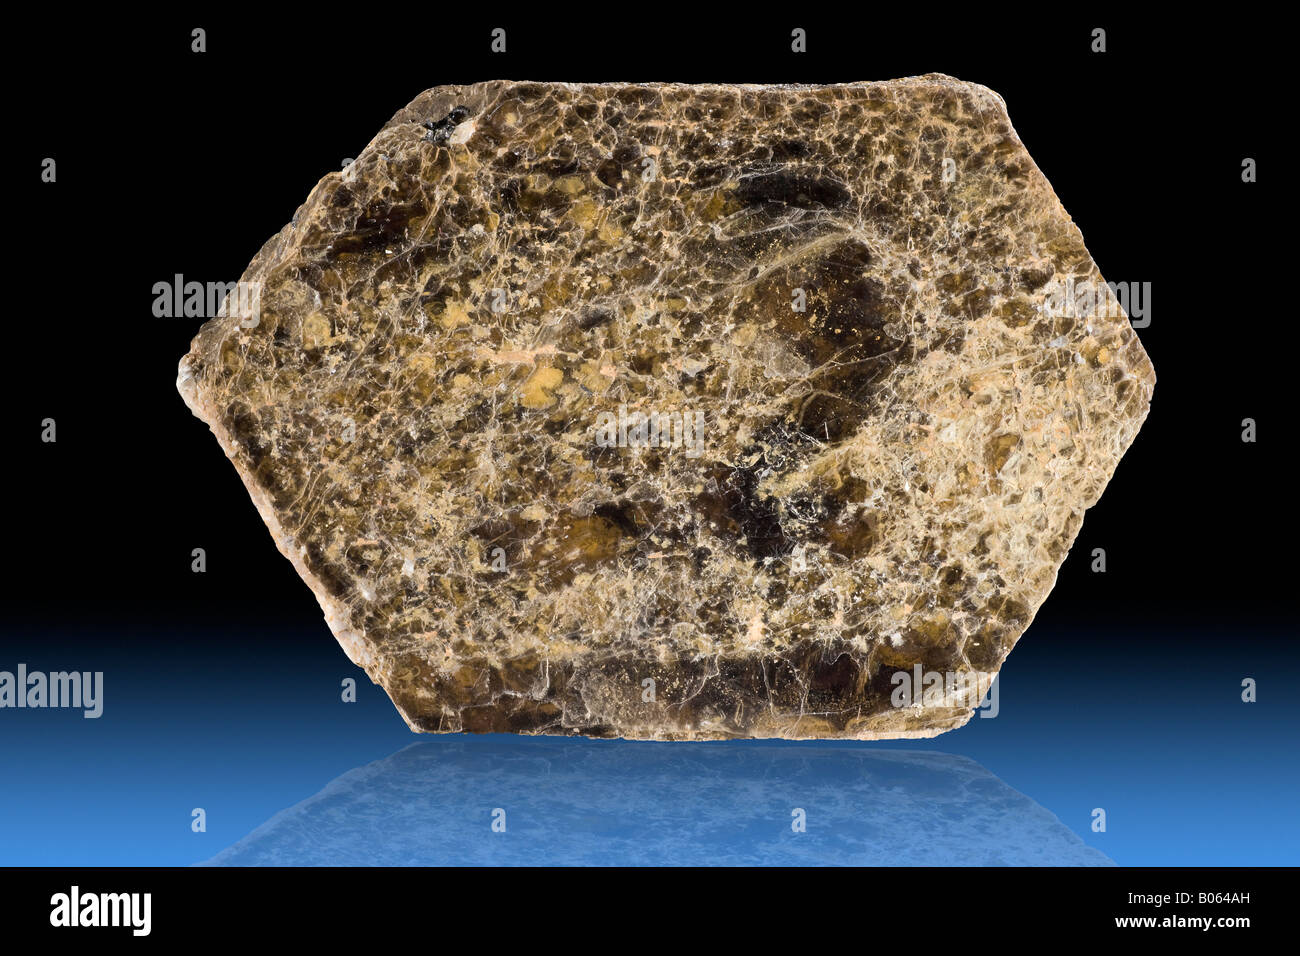 Minerali di mica immagini e fotografie stock ad alta risoluzione - Alamy